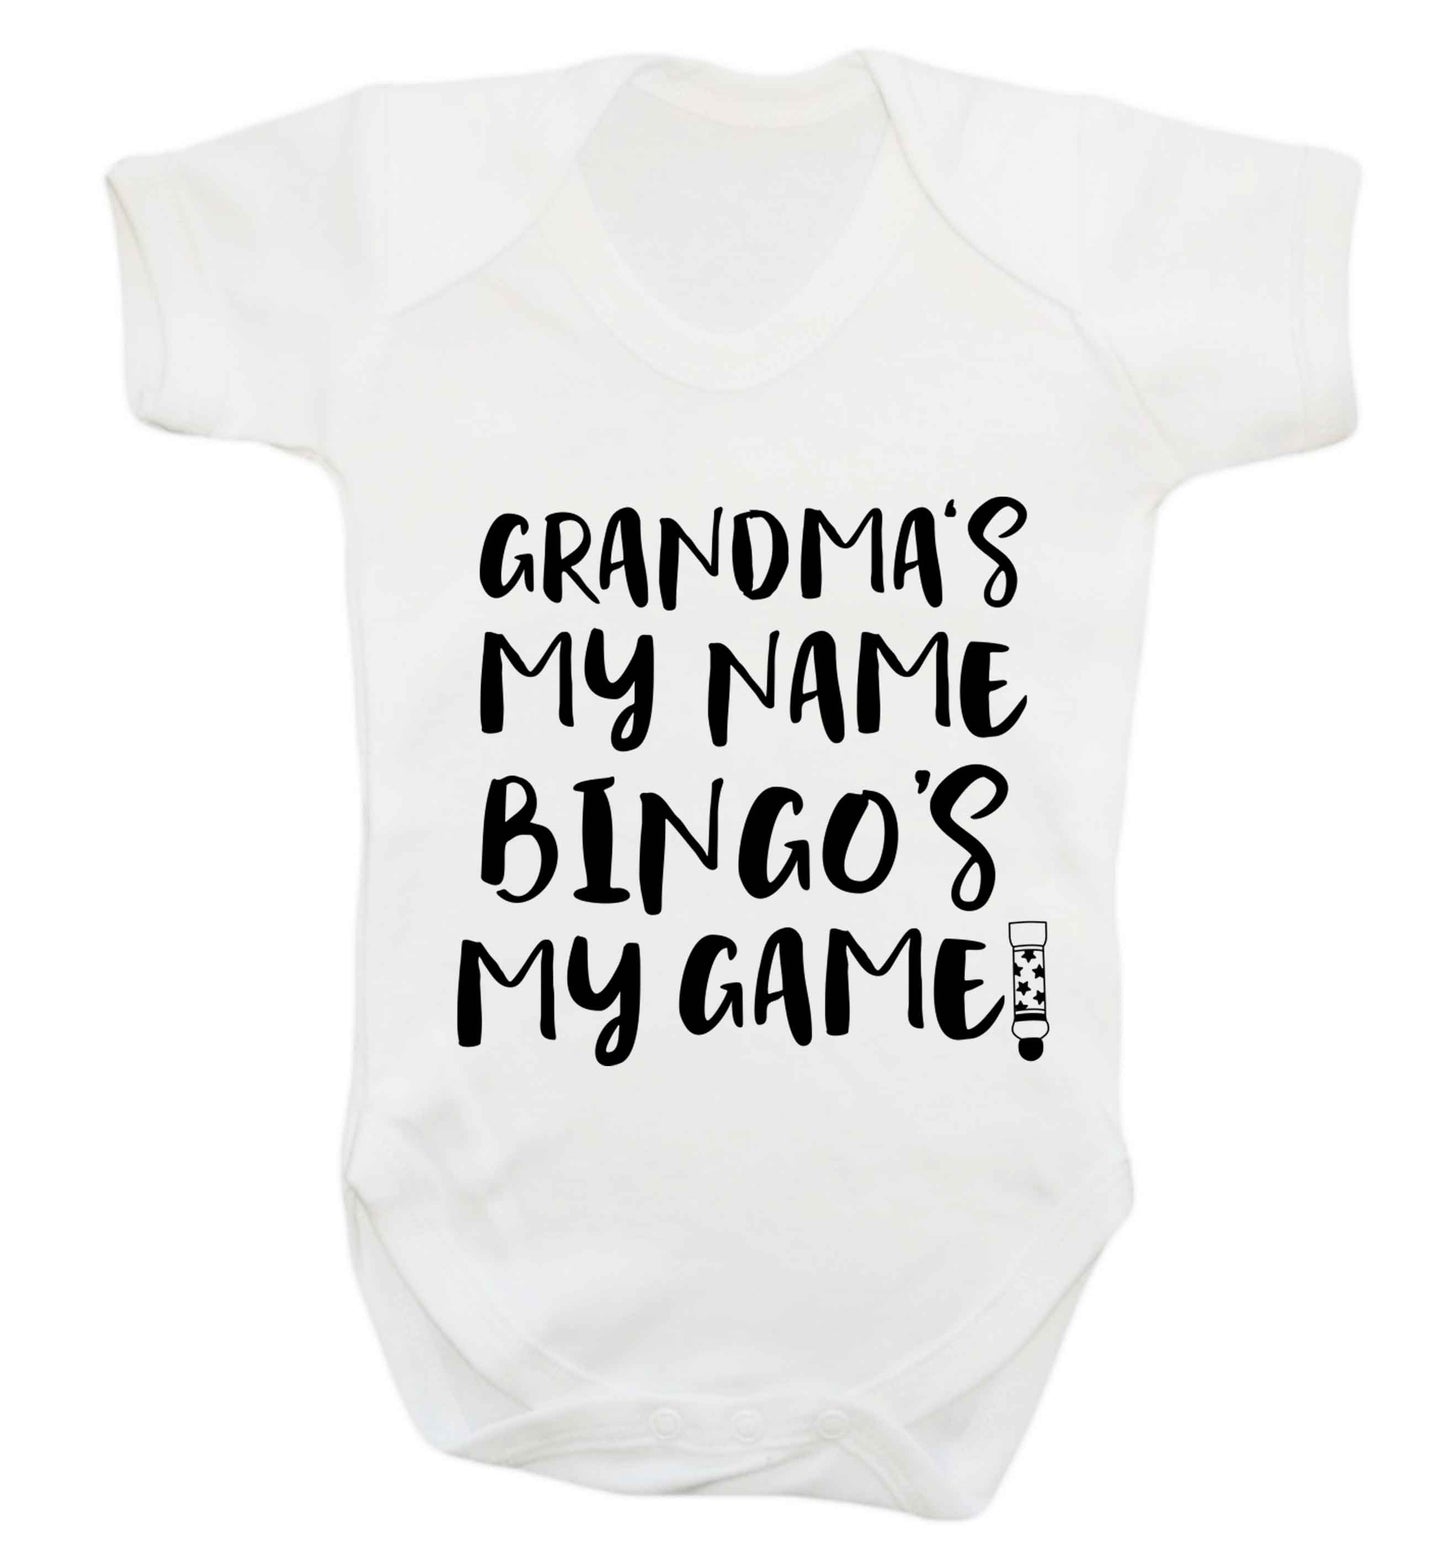 Grandma's my name bingo's my game! Baby Vest white 18-24 months